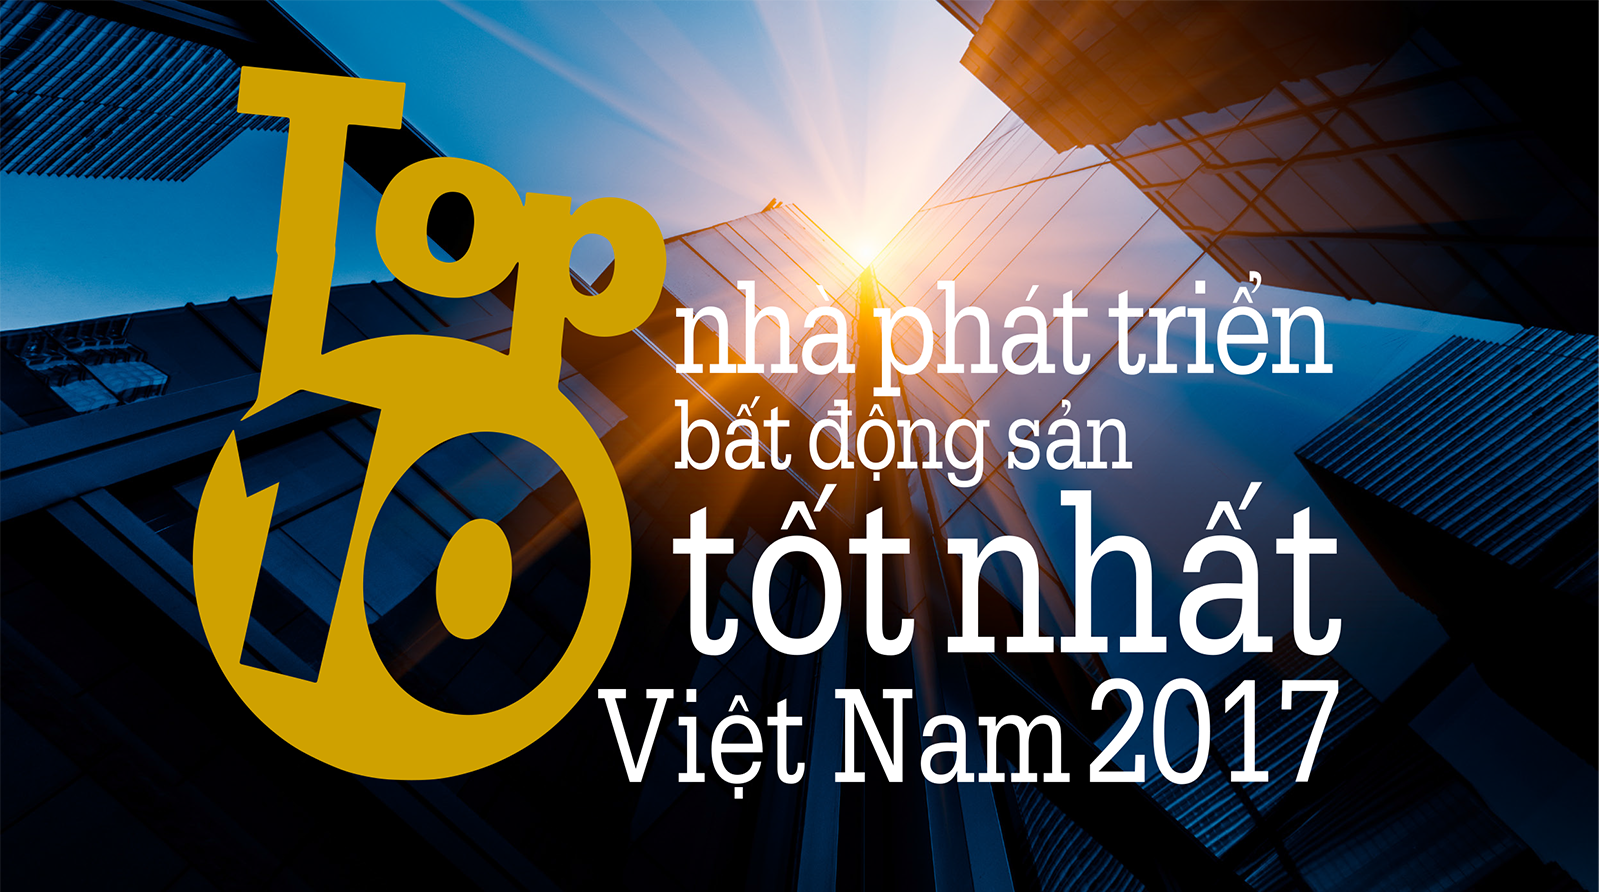 Top 10 nhà phát triển bất động sản tốt nhất Việt Nam 2017